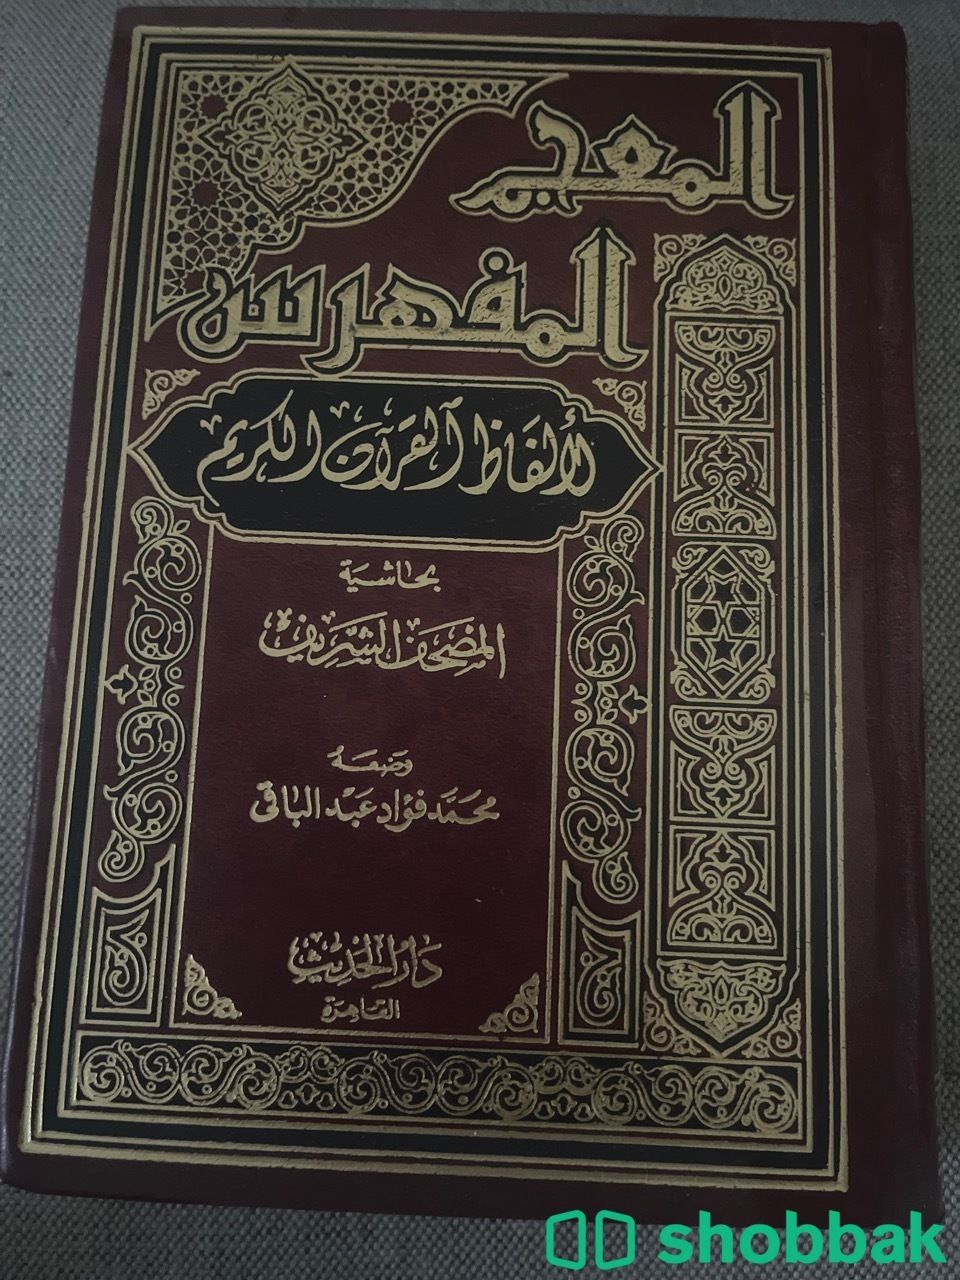 المعجم المفهرس لألفاظ القرآن الكريم Shobbak Saudi Arabia